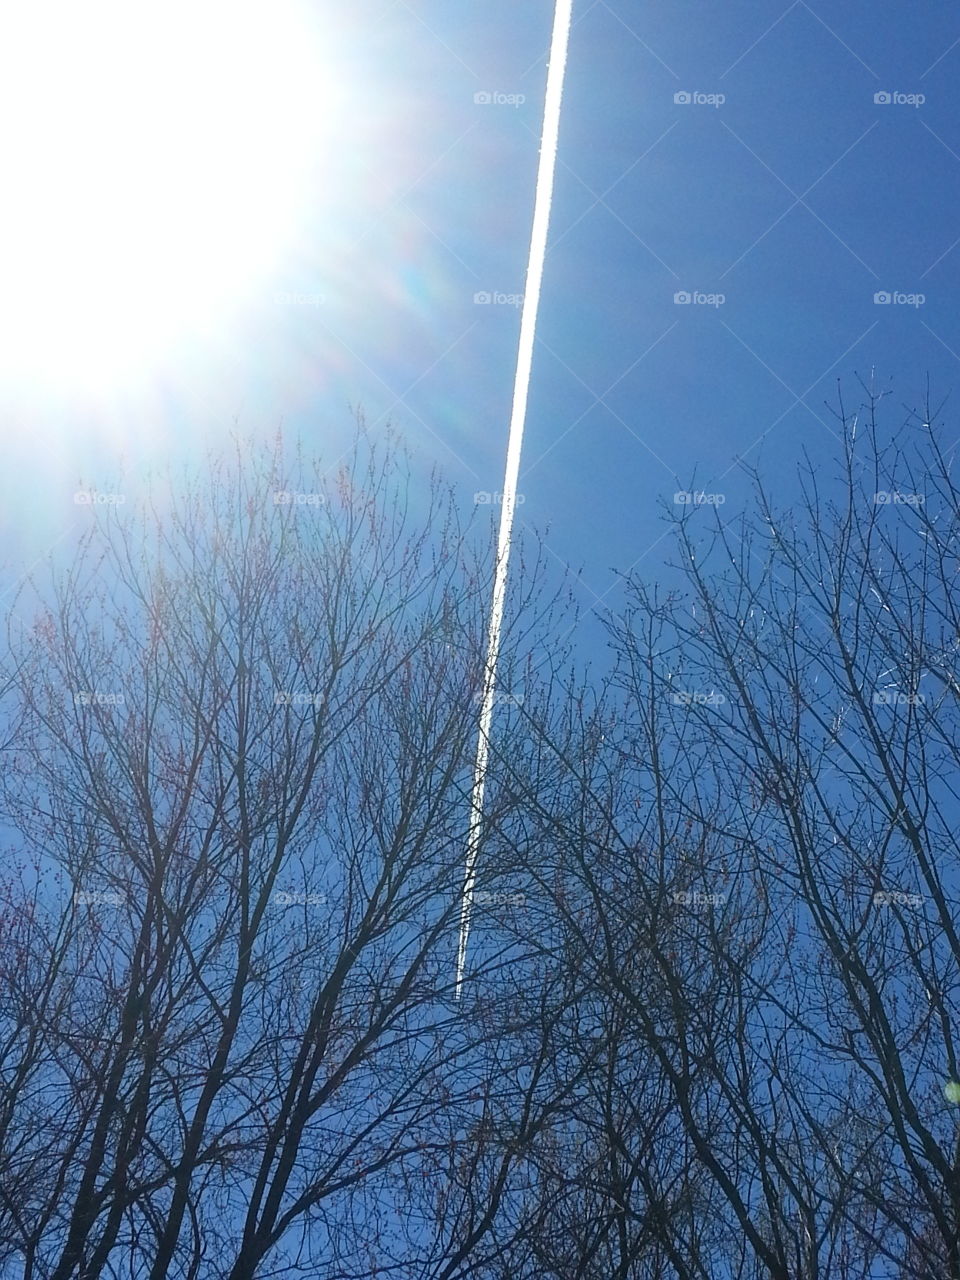 A jet dividing the blue sky. Backyard sights